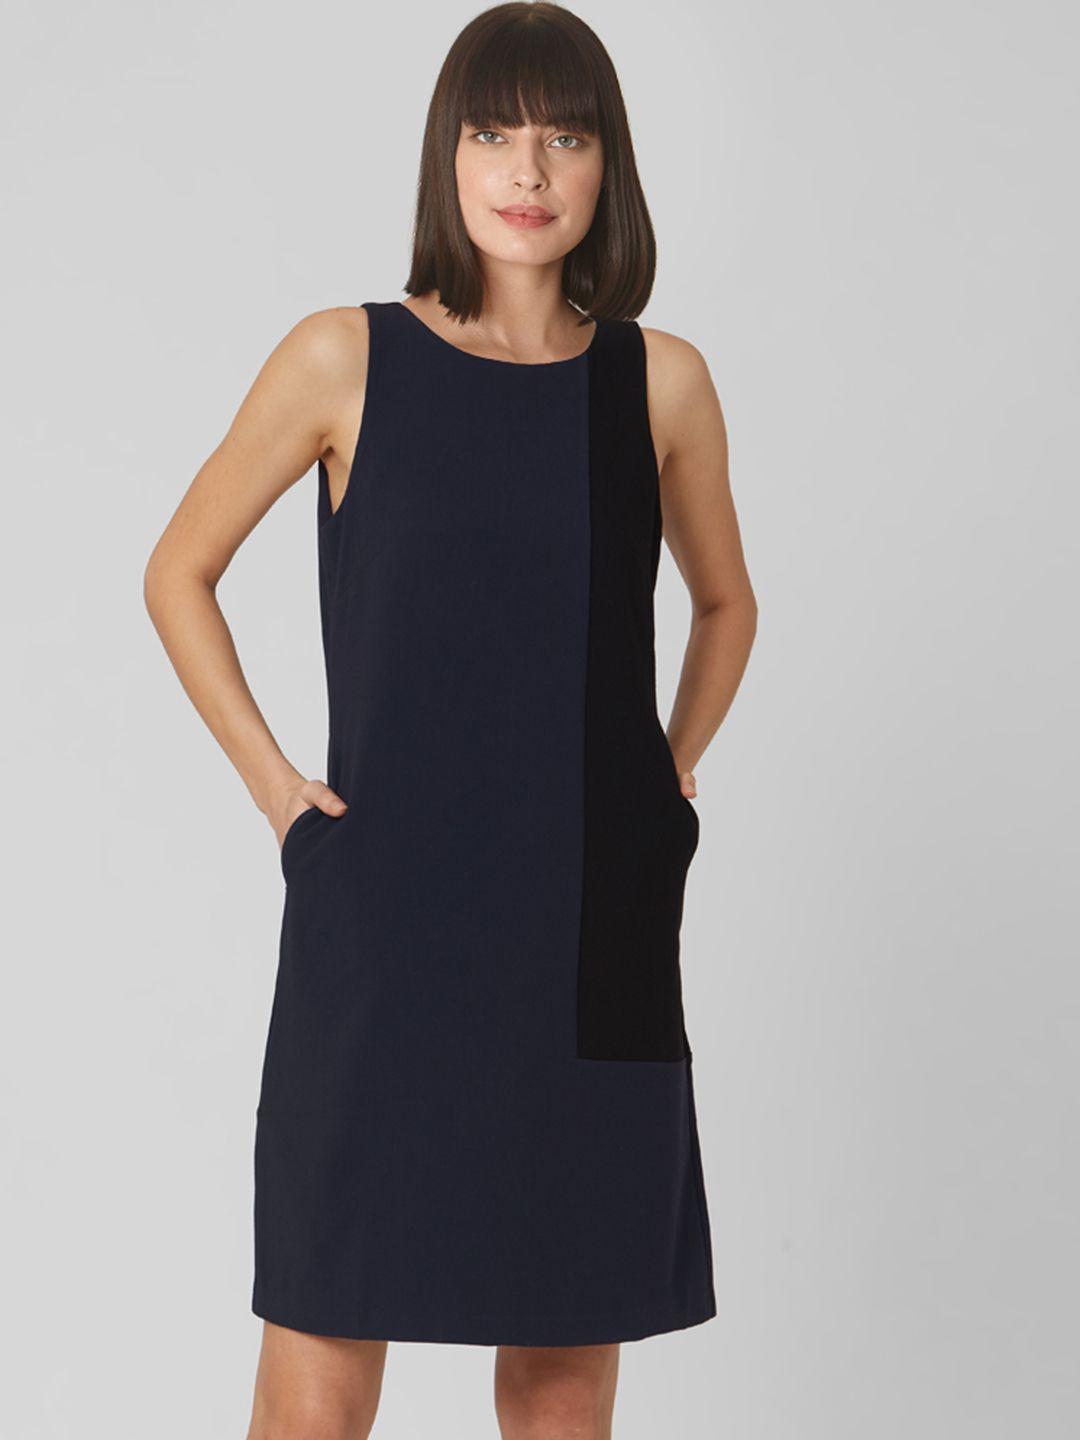 vero moda women navy blue & black colourblocked sheath dress